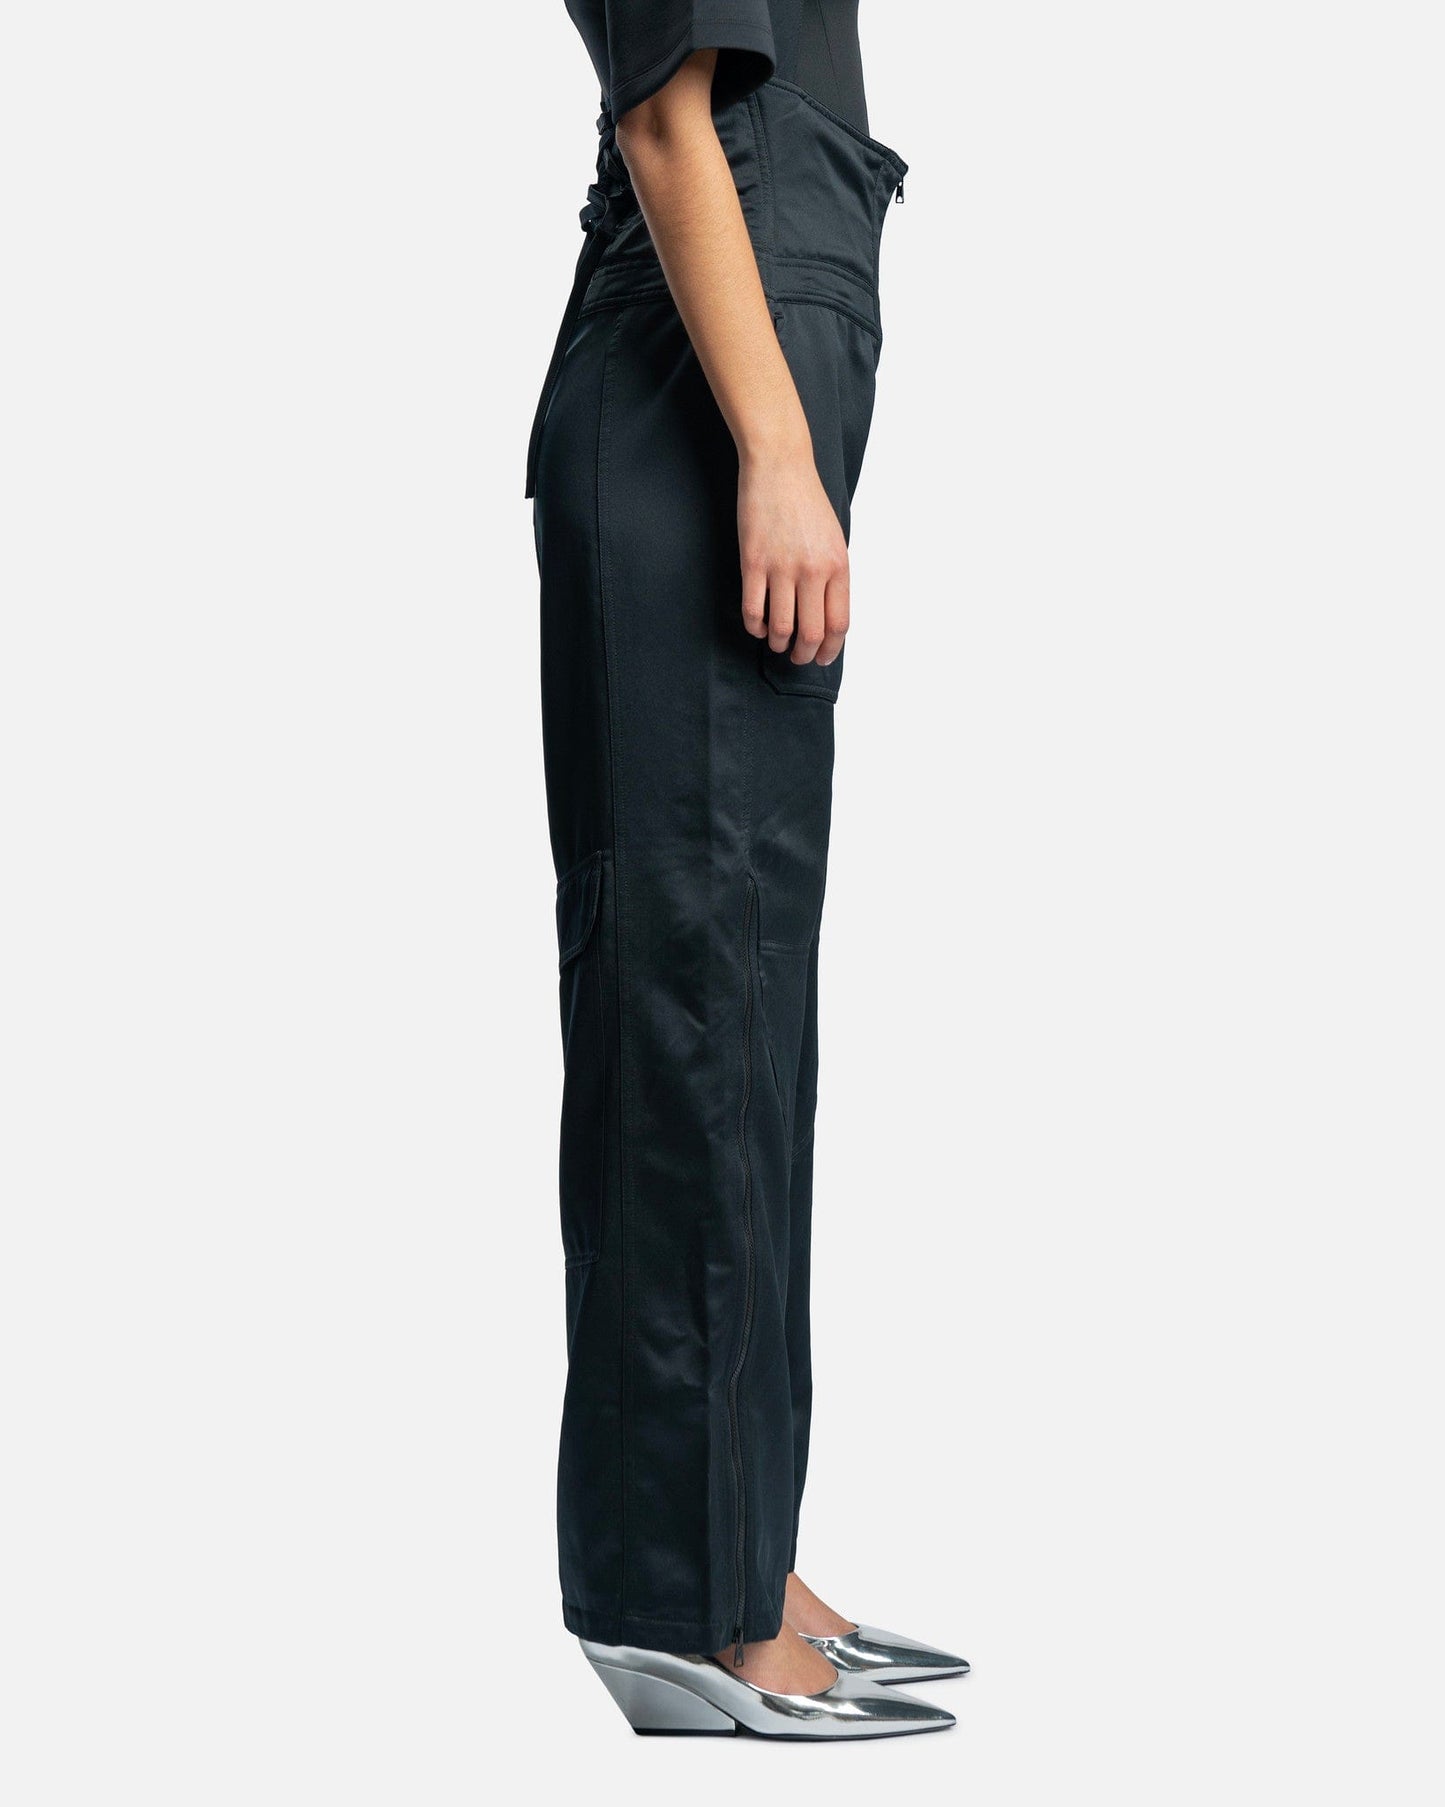 JORDAN Women Pants 23 Engineered Utility Trousers in Black